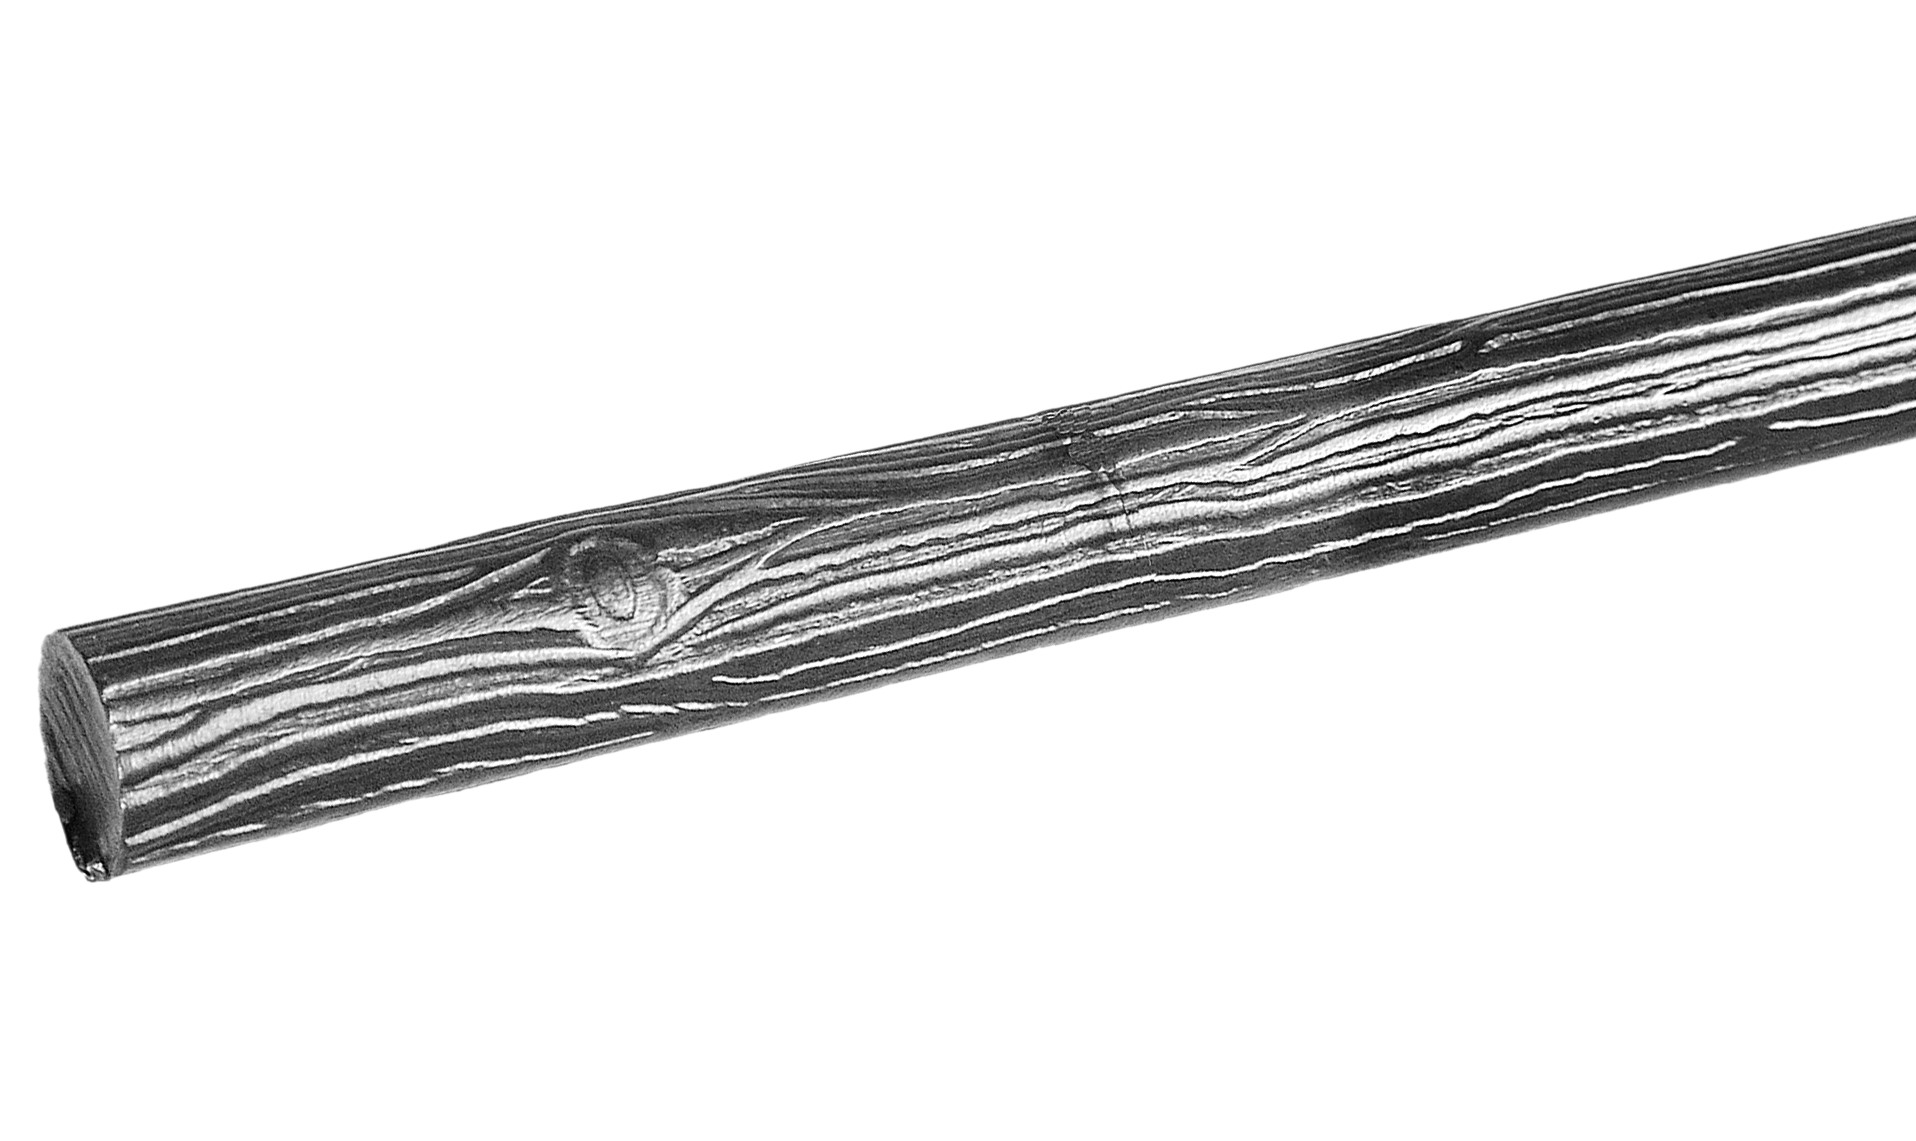 Barre en fer forgé style raisin de 3000mm de longueur et 10mm de diamètre.